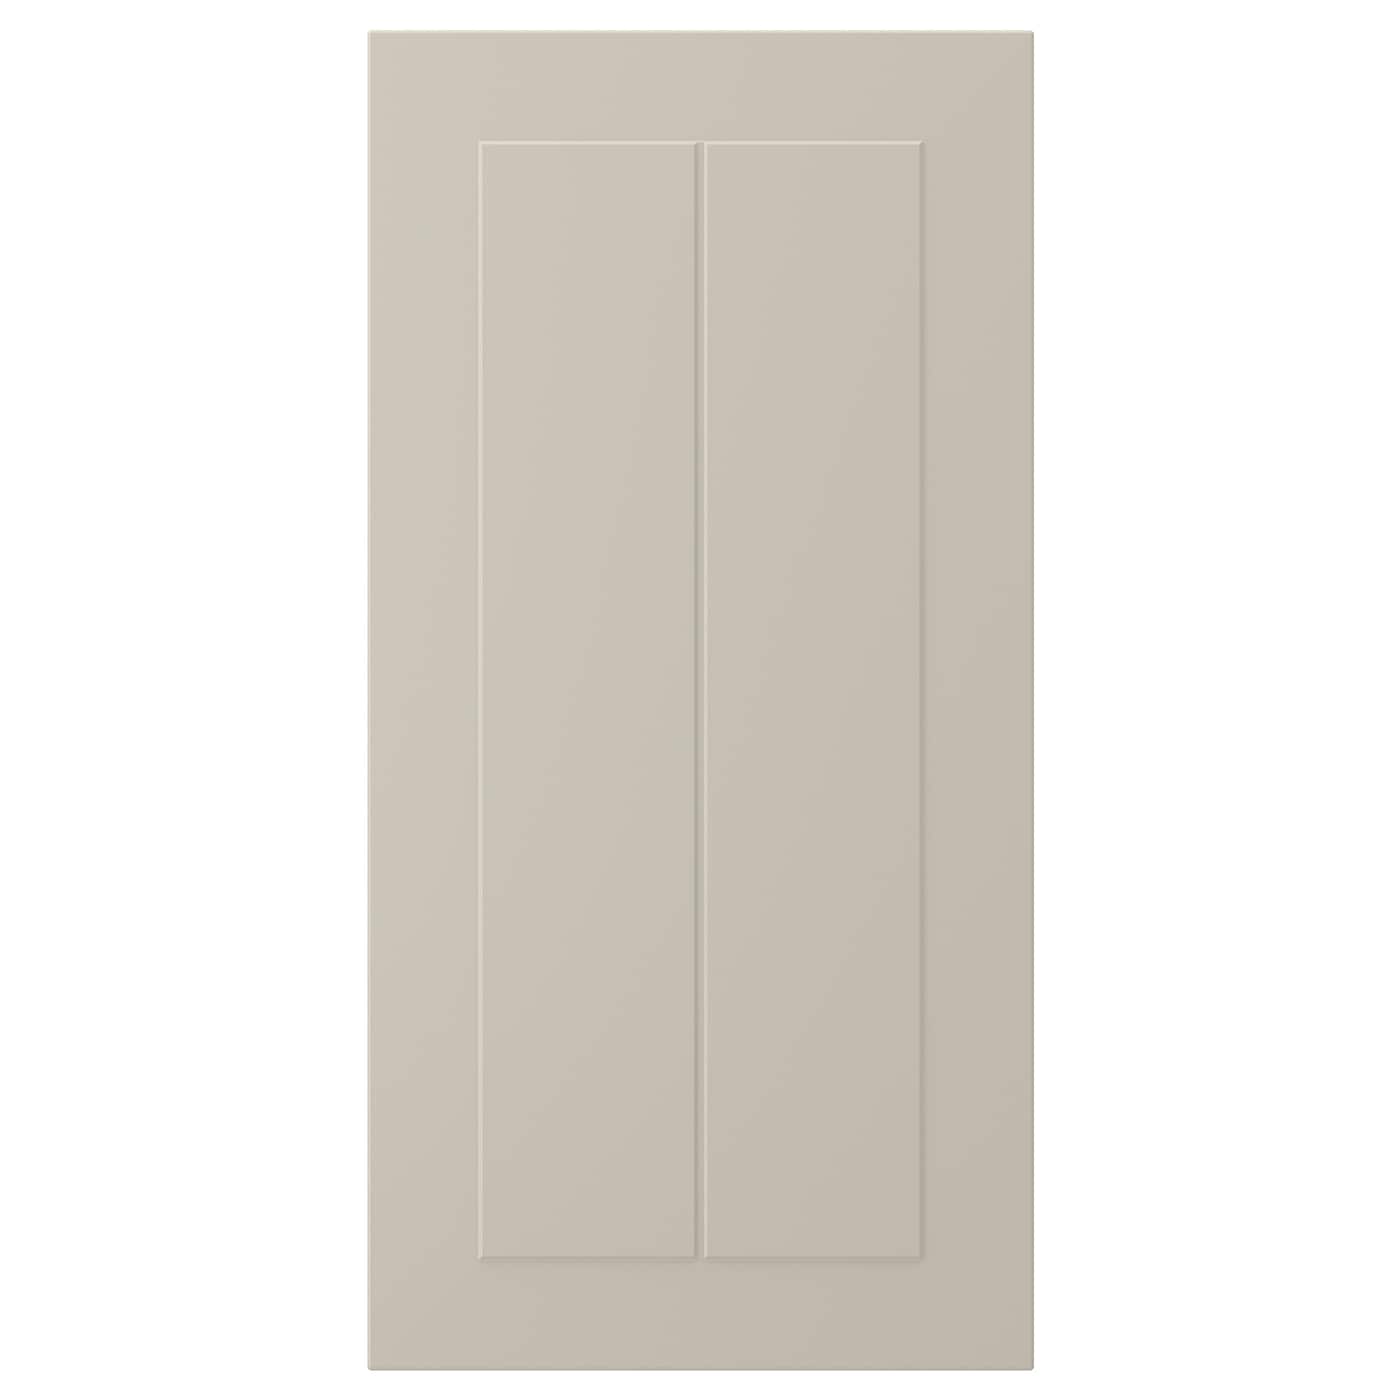 Дверца - IKEA STENSUND, 60х30 см, бежевый, СТЕНСУНД ИКЕА